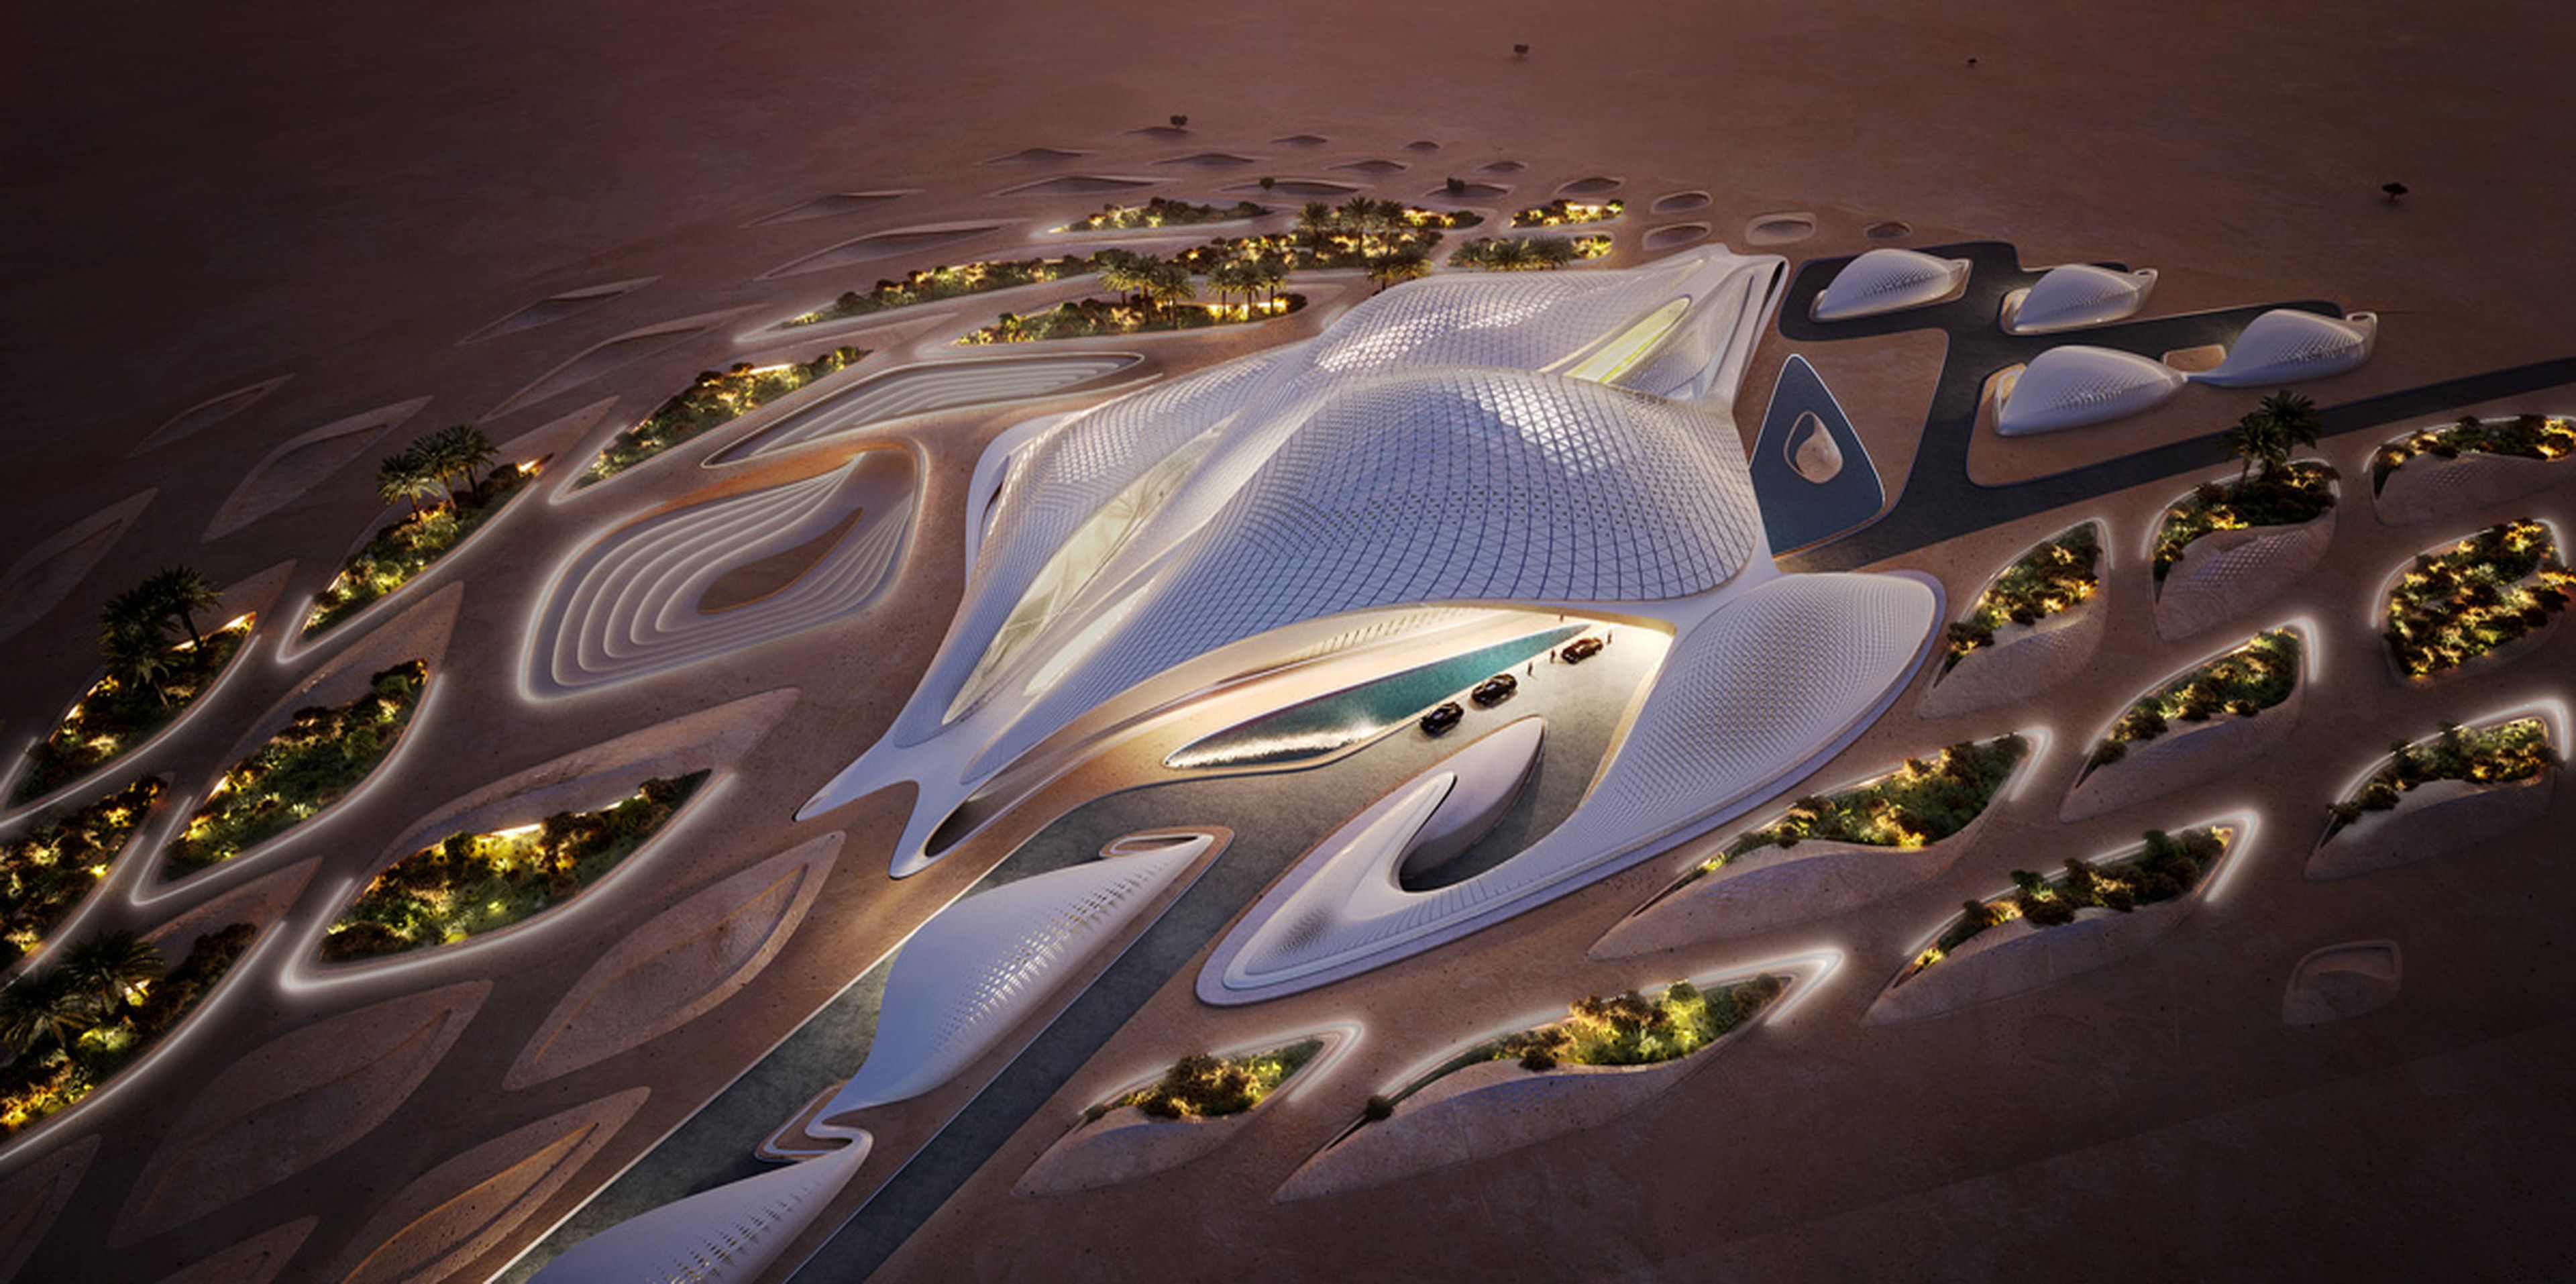 La sede central de Bee'ah en los Emiratos Árabes Unidos, diseñada por Zaha Hadid